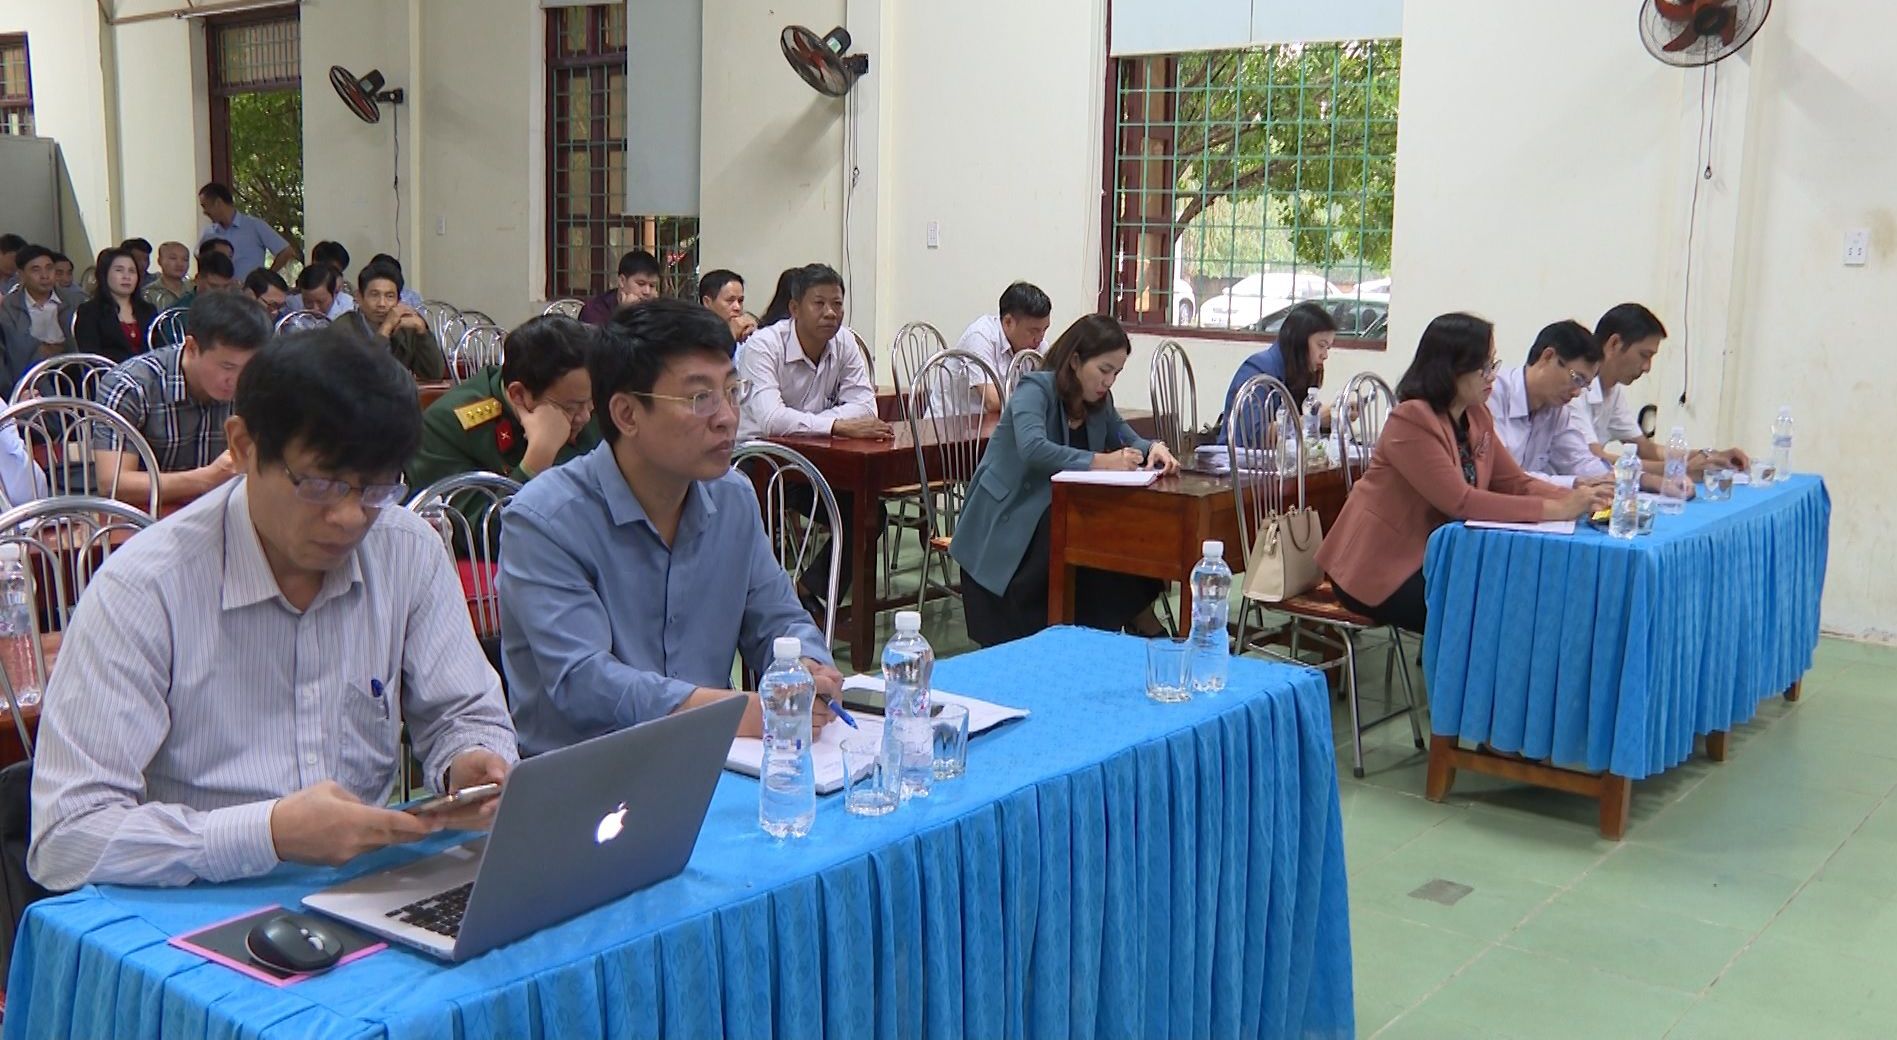 Đông đảo cử tri huyện Quảng Trạch tham dự buổi tiếp xúc cử tri với Đoàn ĐBQH tỉnh.